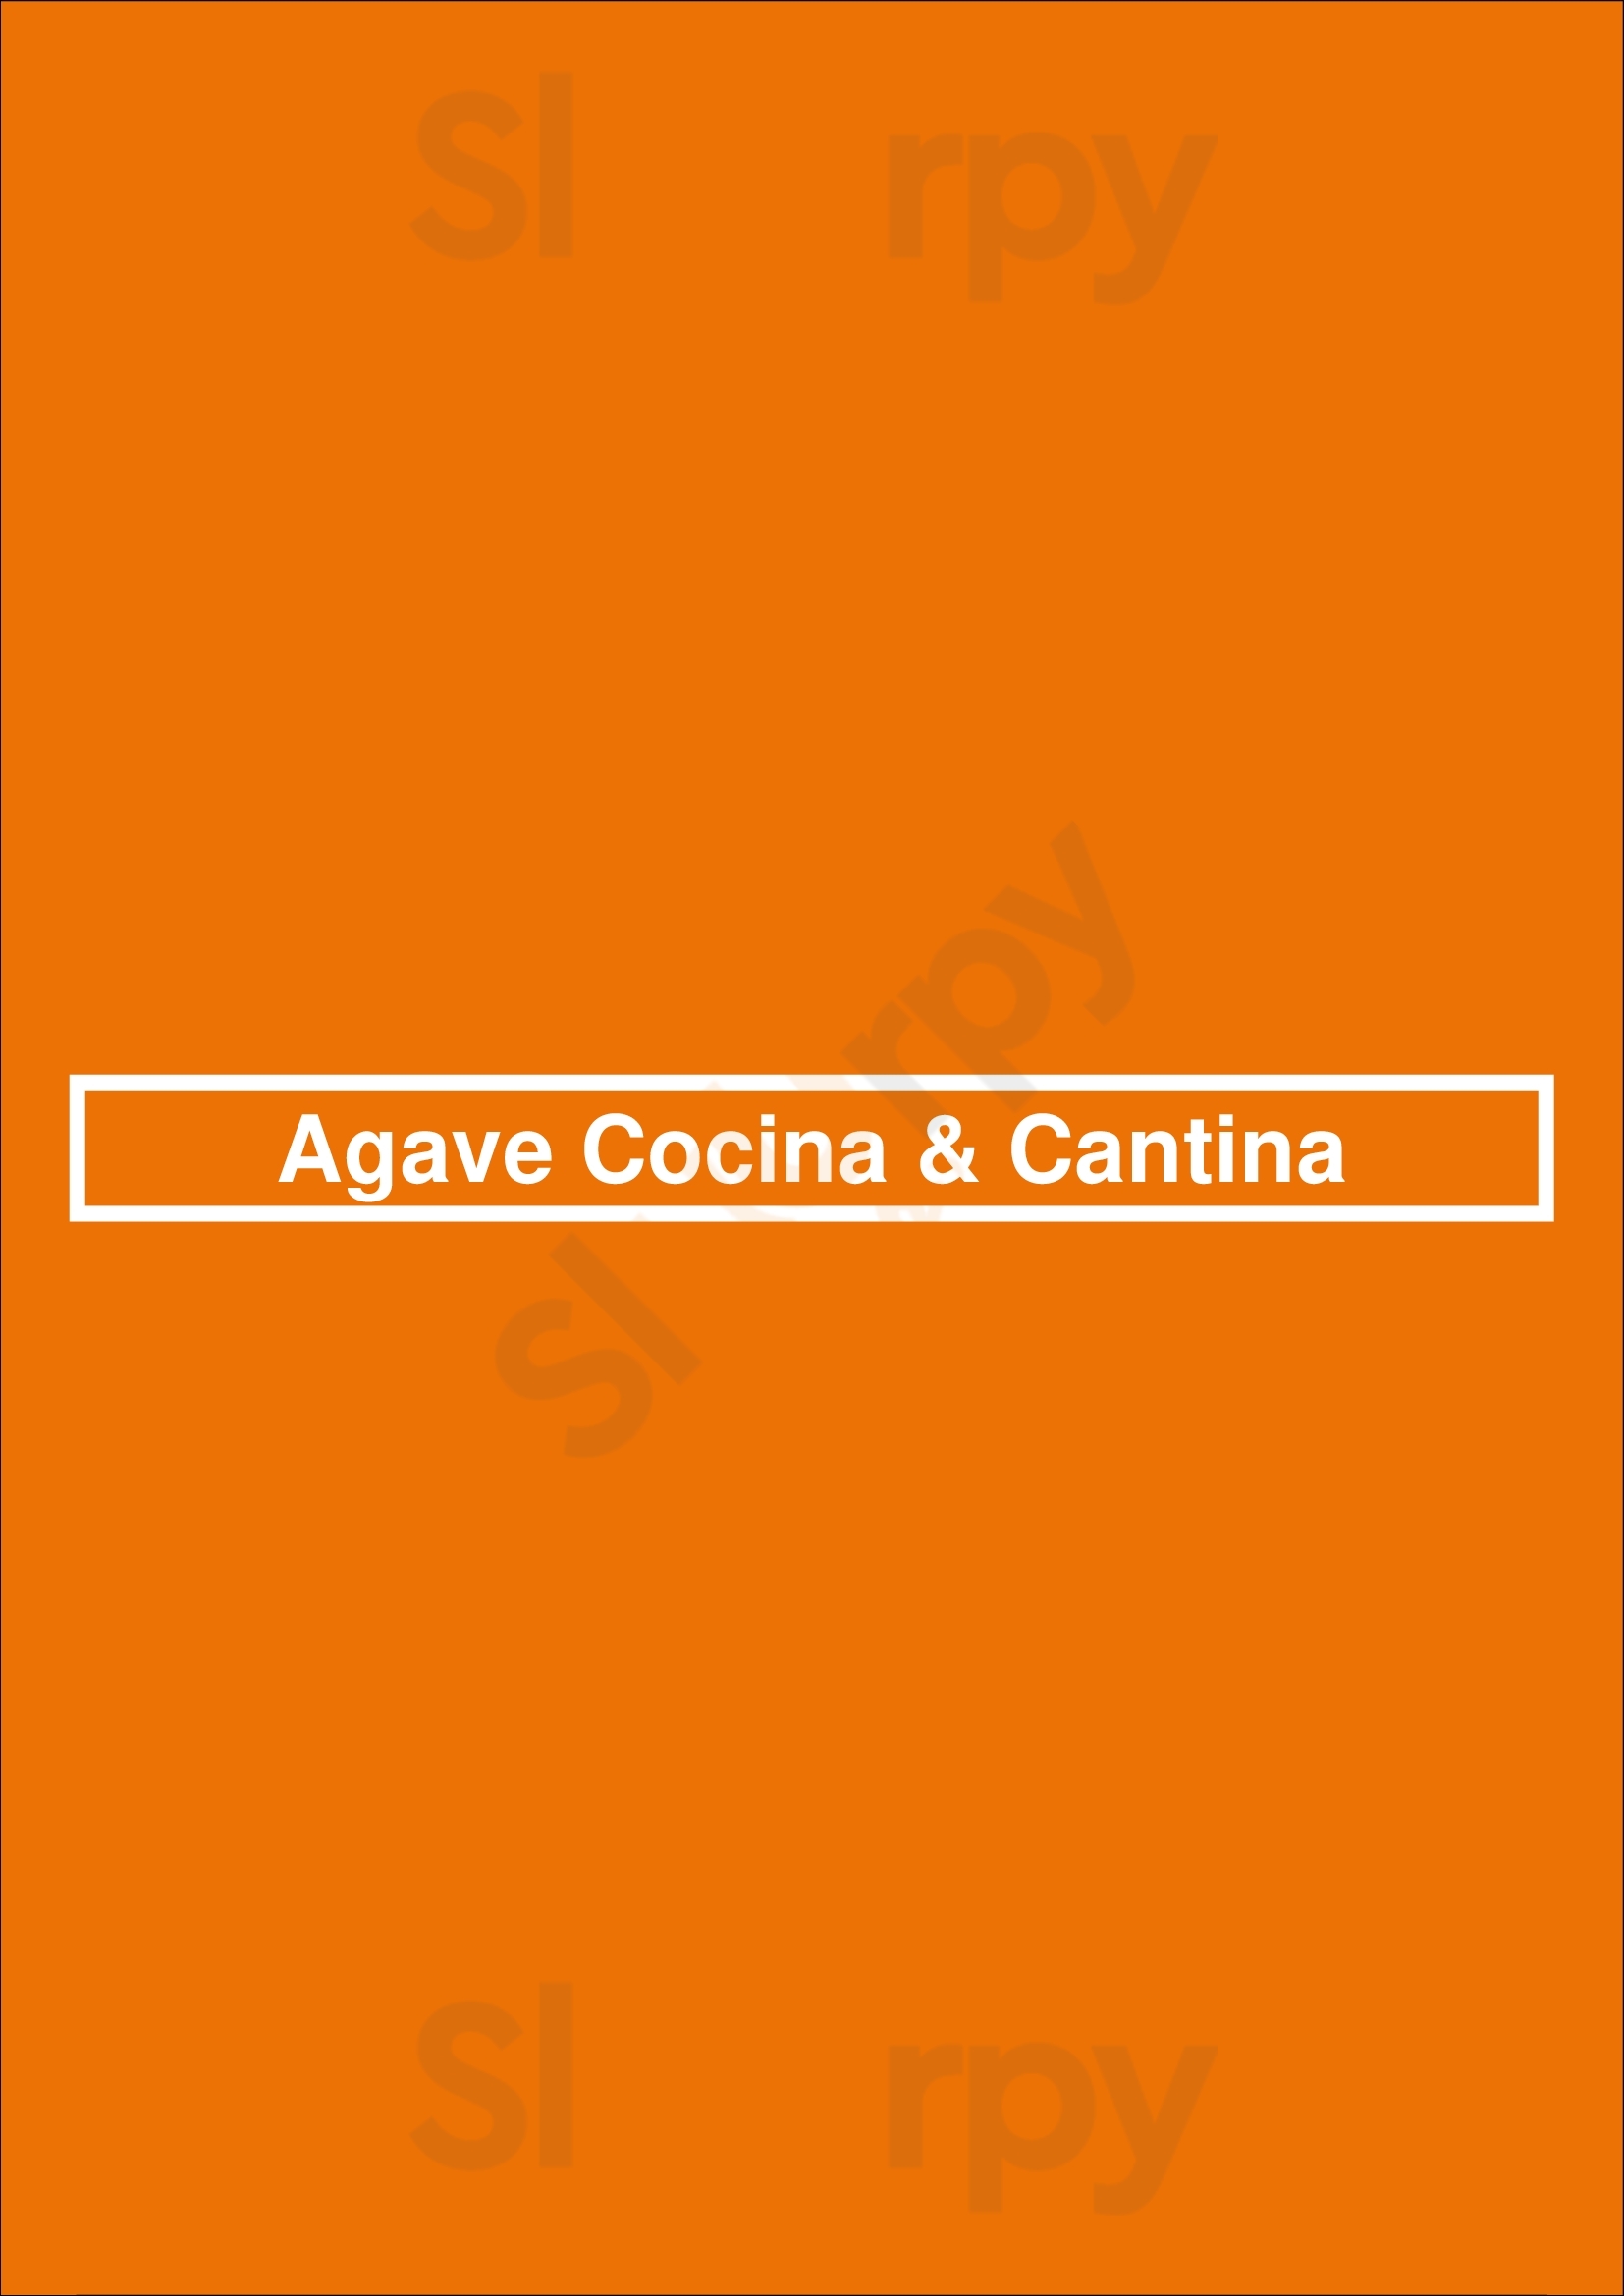 Agave Cocina & Cantina Redmond Menu - 1